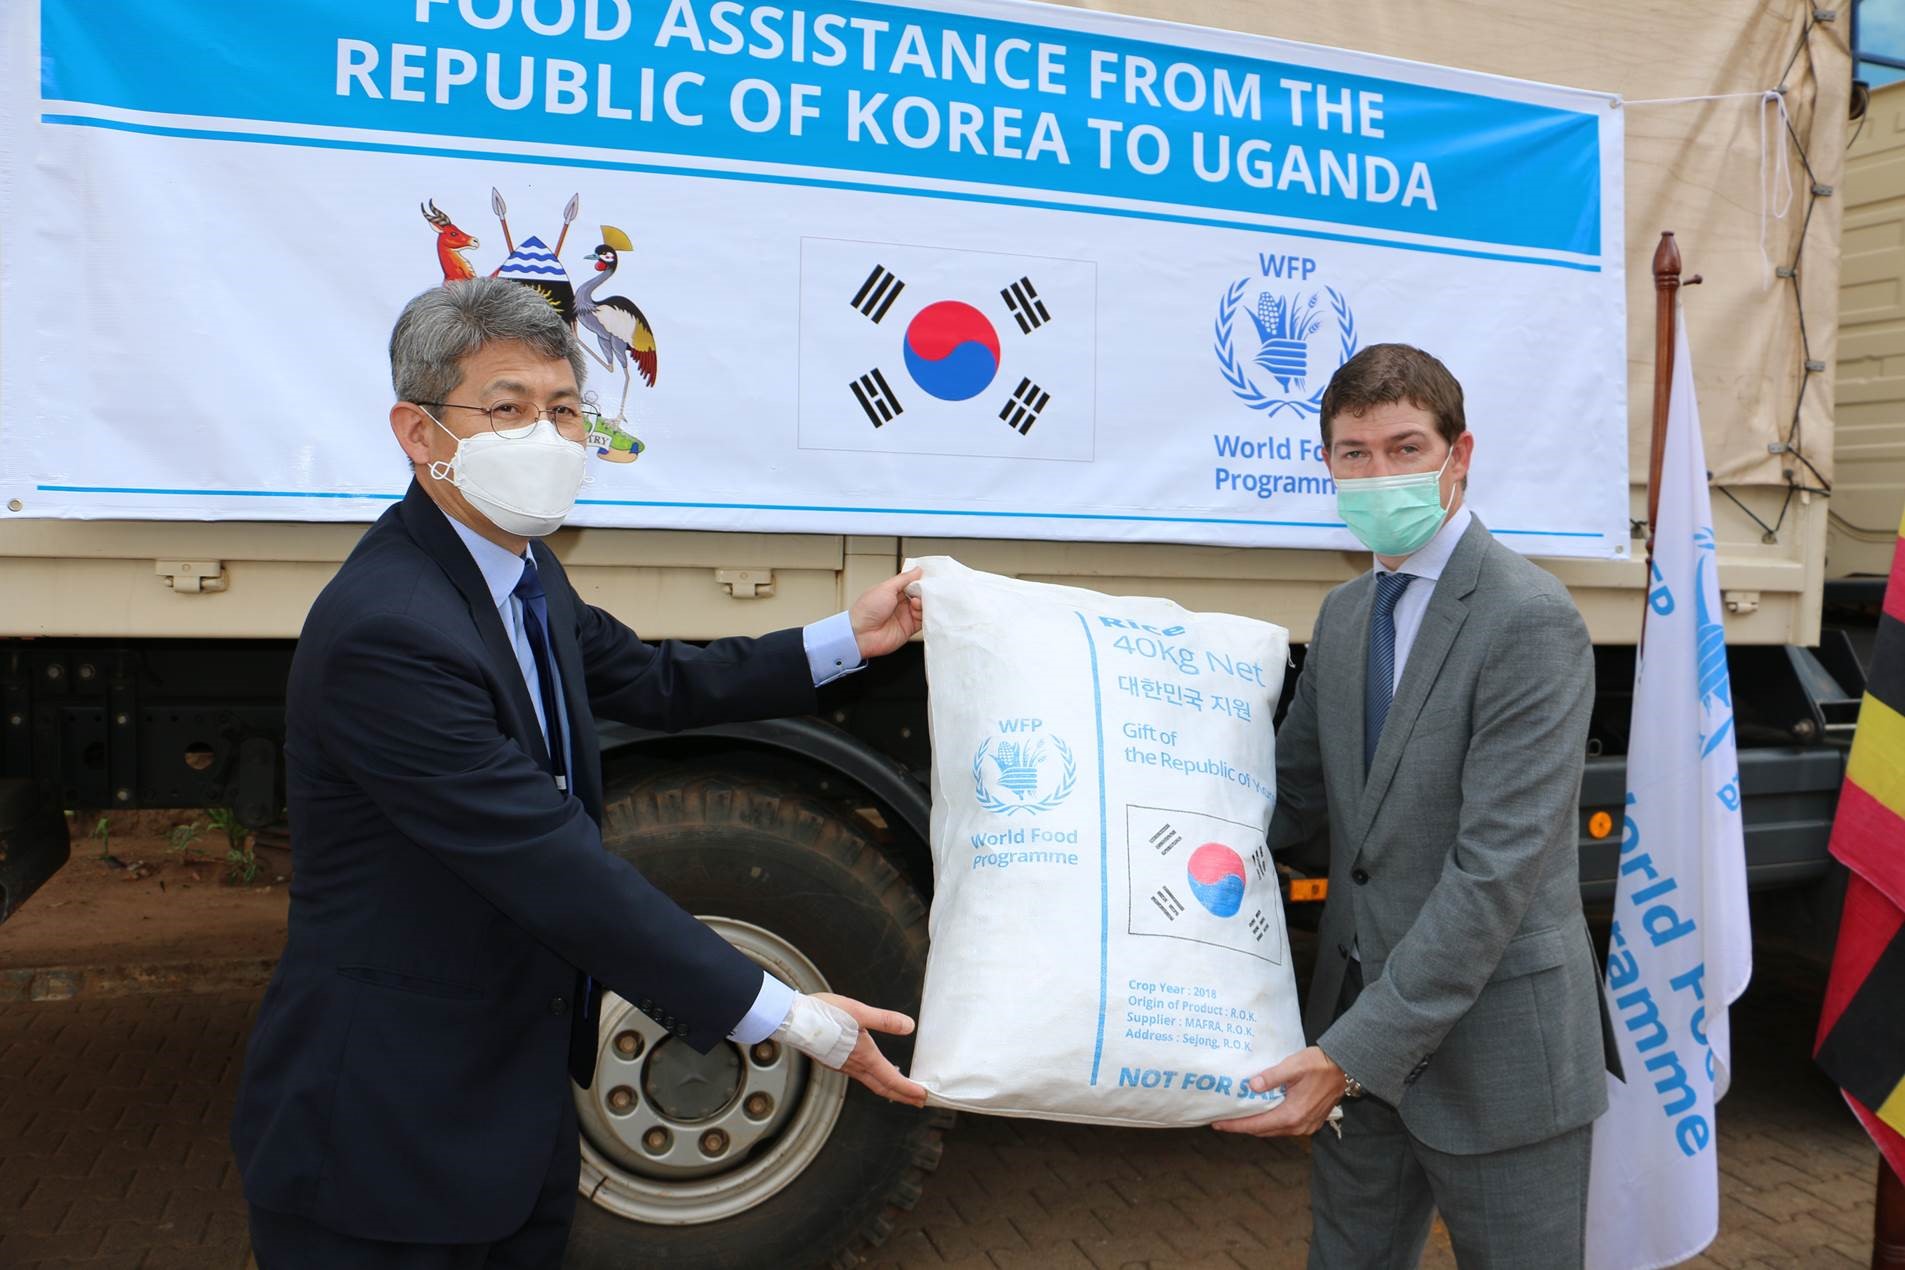 전달식에 참석한 하병규 주우간다 대한민국 대사와 라이언 앤더슨 WFP 우간다 사무소 책임자